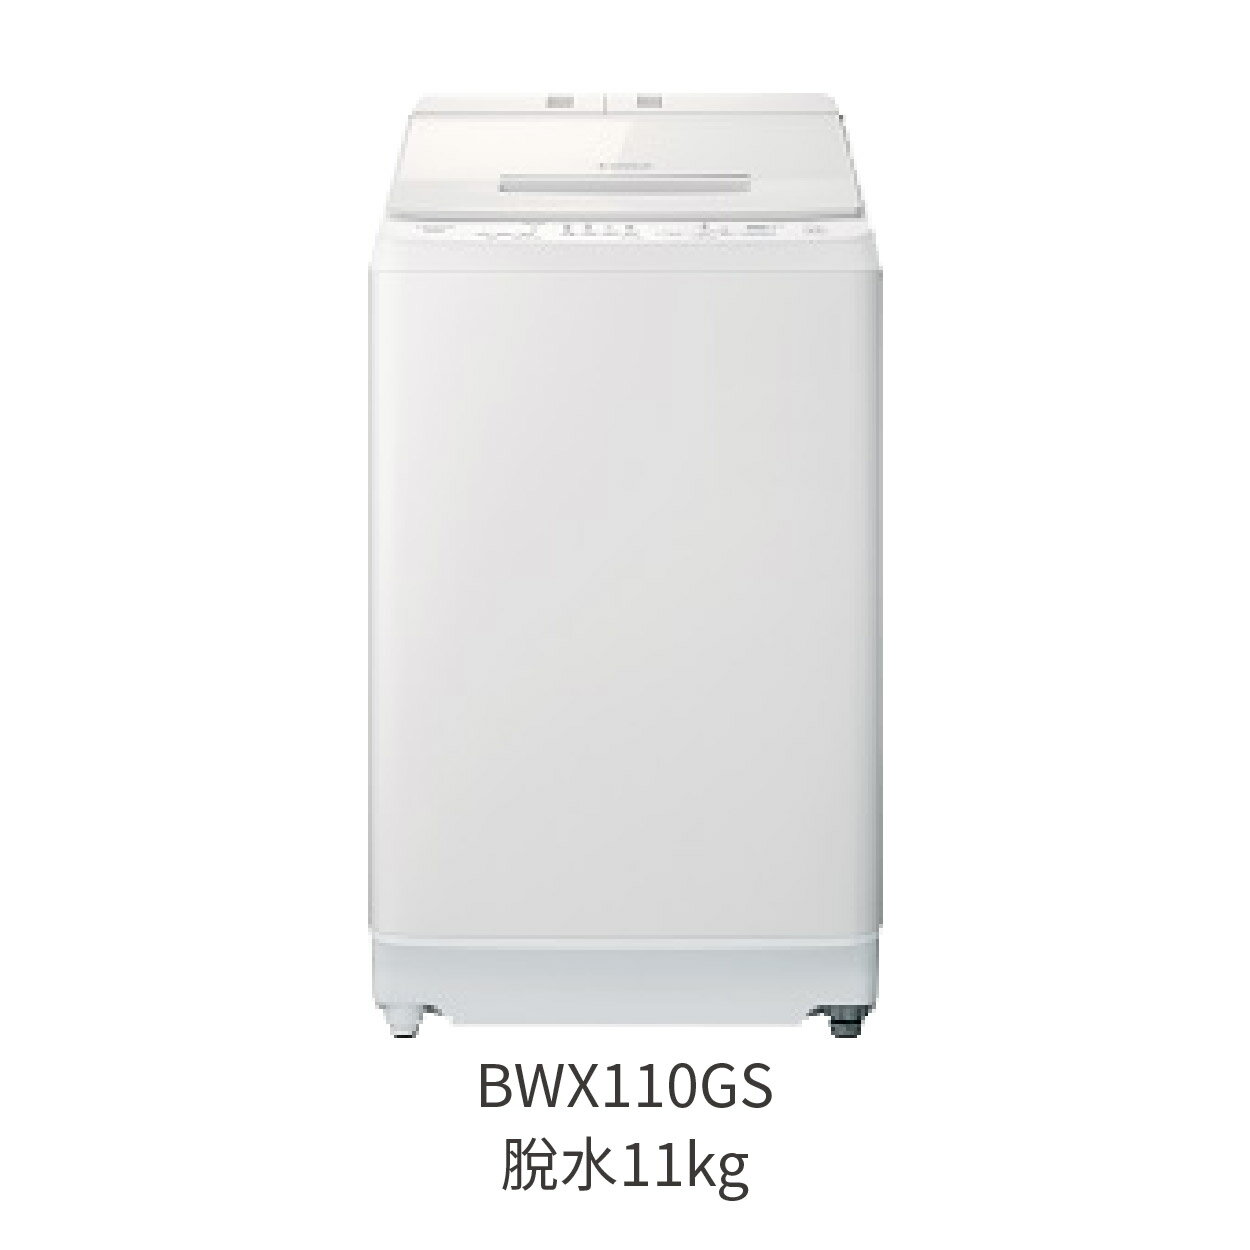 【點數10%回饋】BWX110GS 直立式洗衣機 洗劑自動投入 11kg